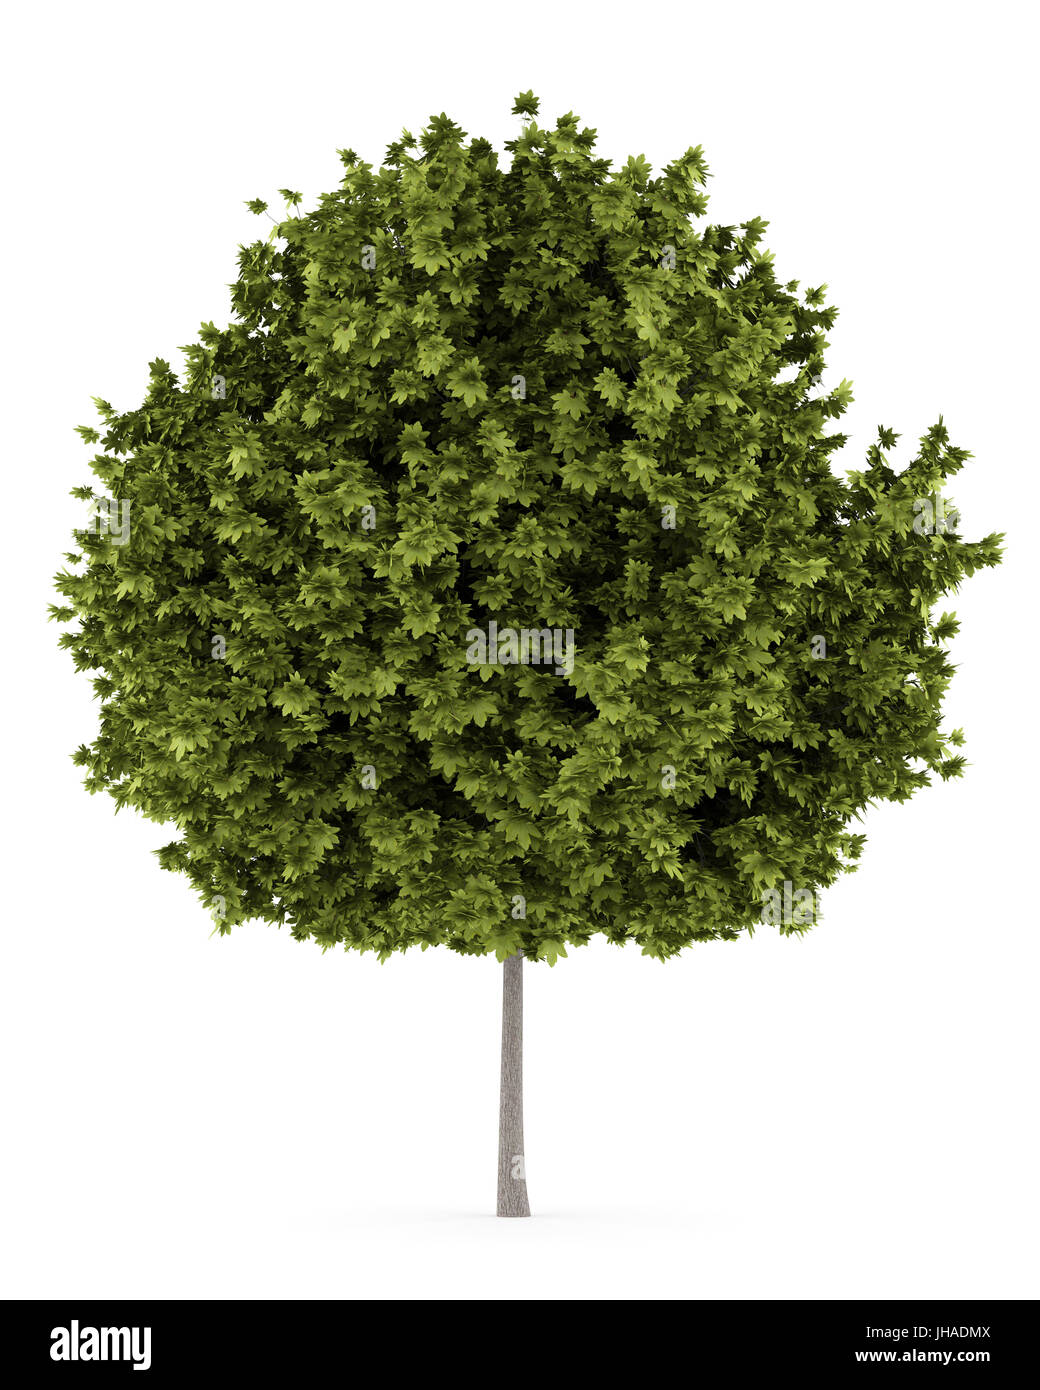 norway maple tree isolated on white background Stock Photo